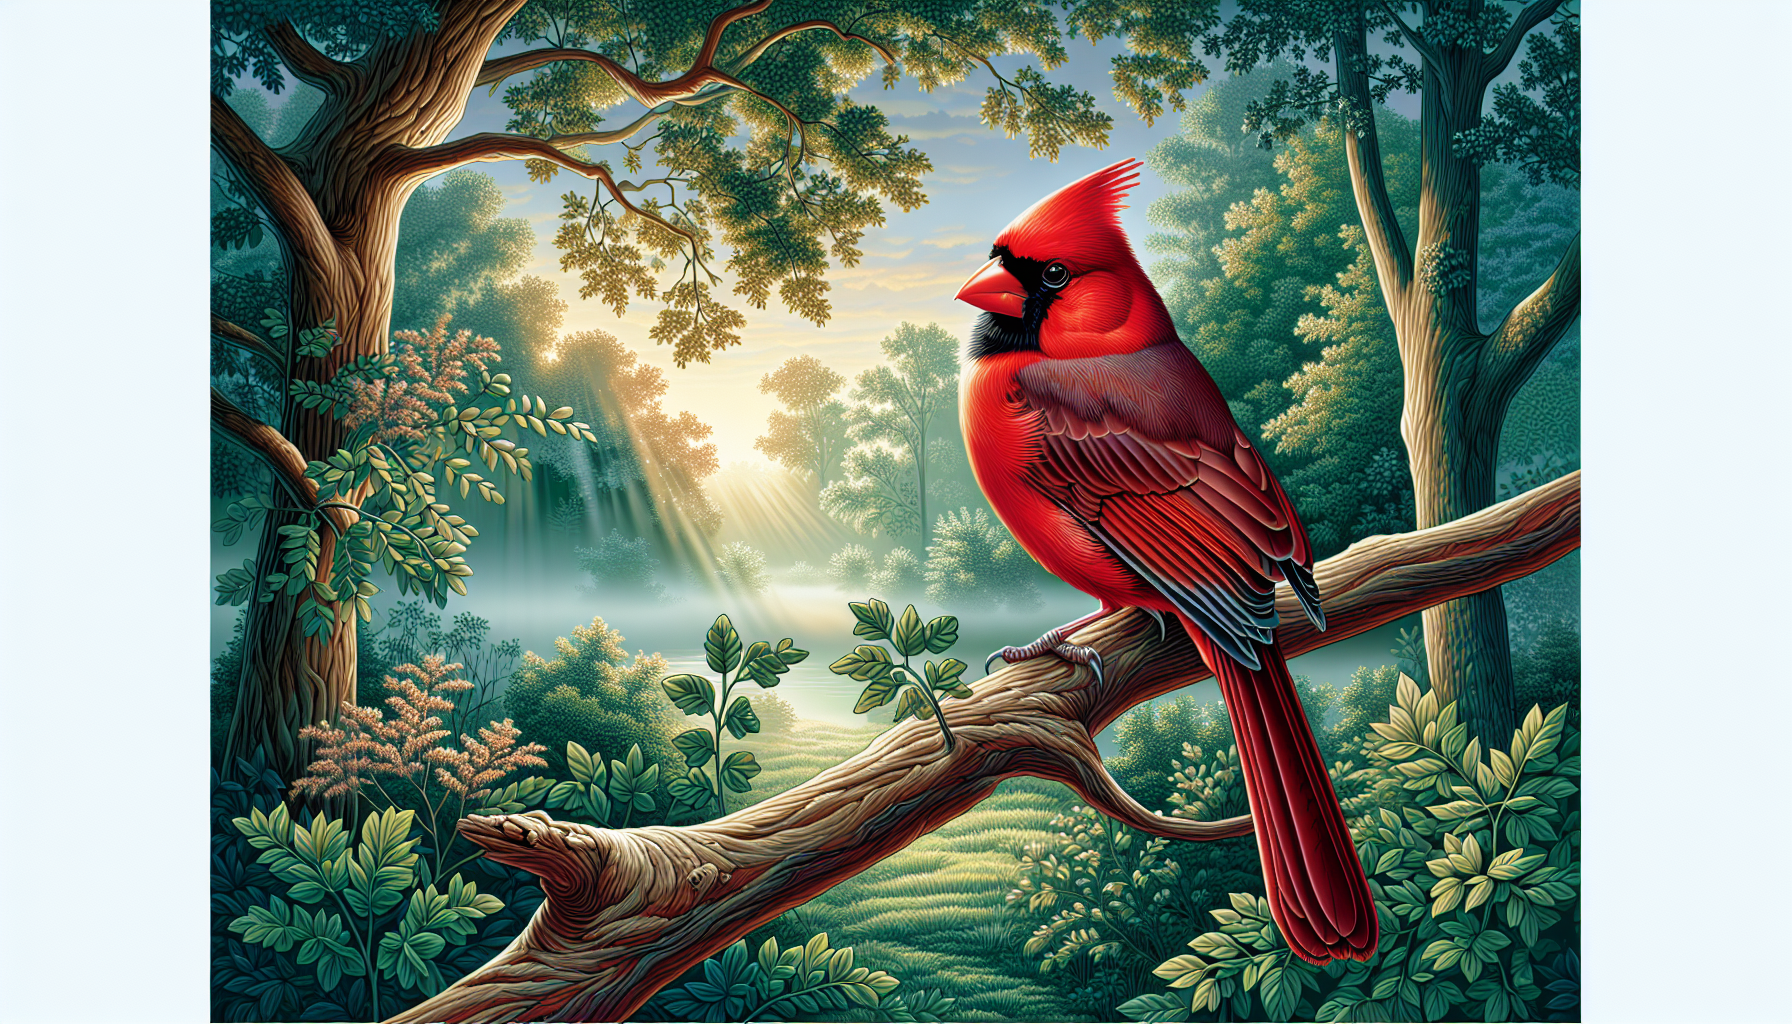 Can I Keep A Cardinal As A Pet?